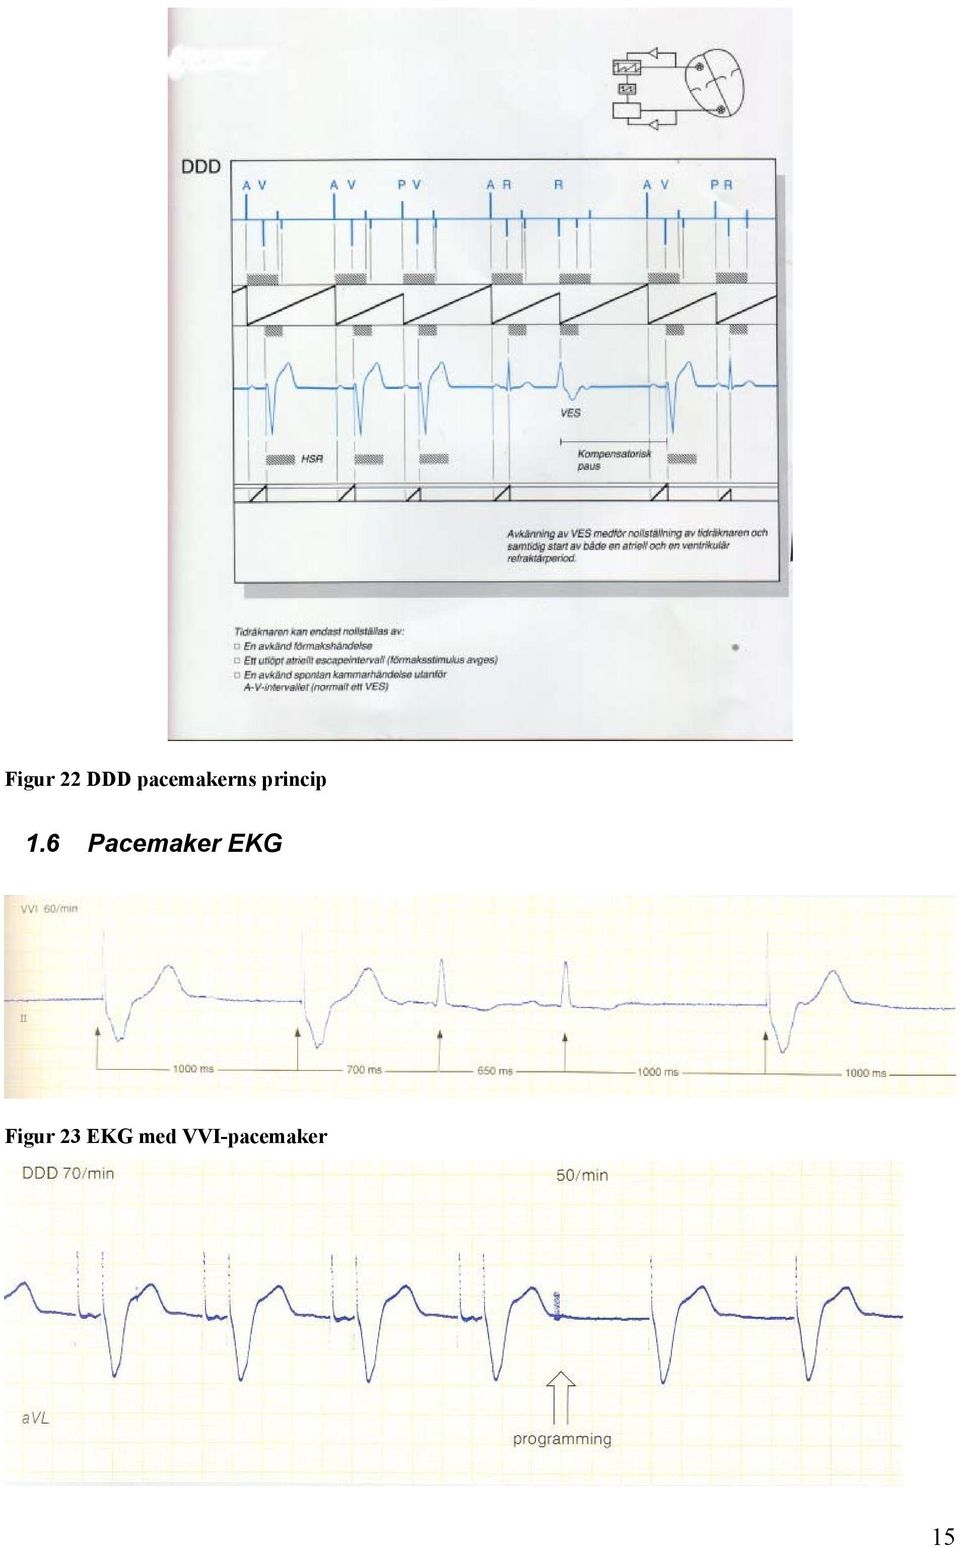 1.6 Pacemaker EKG